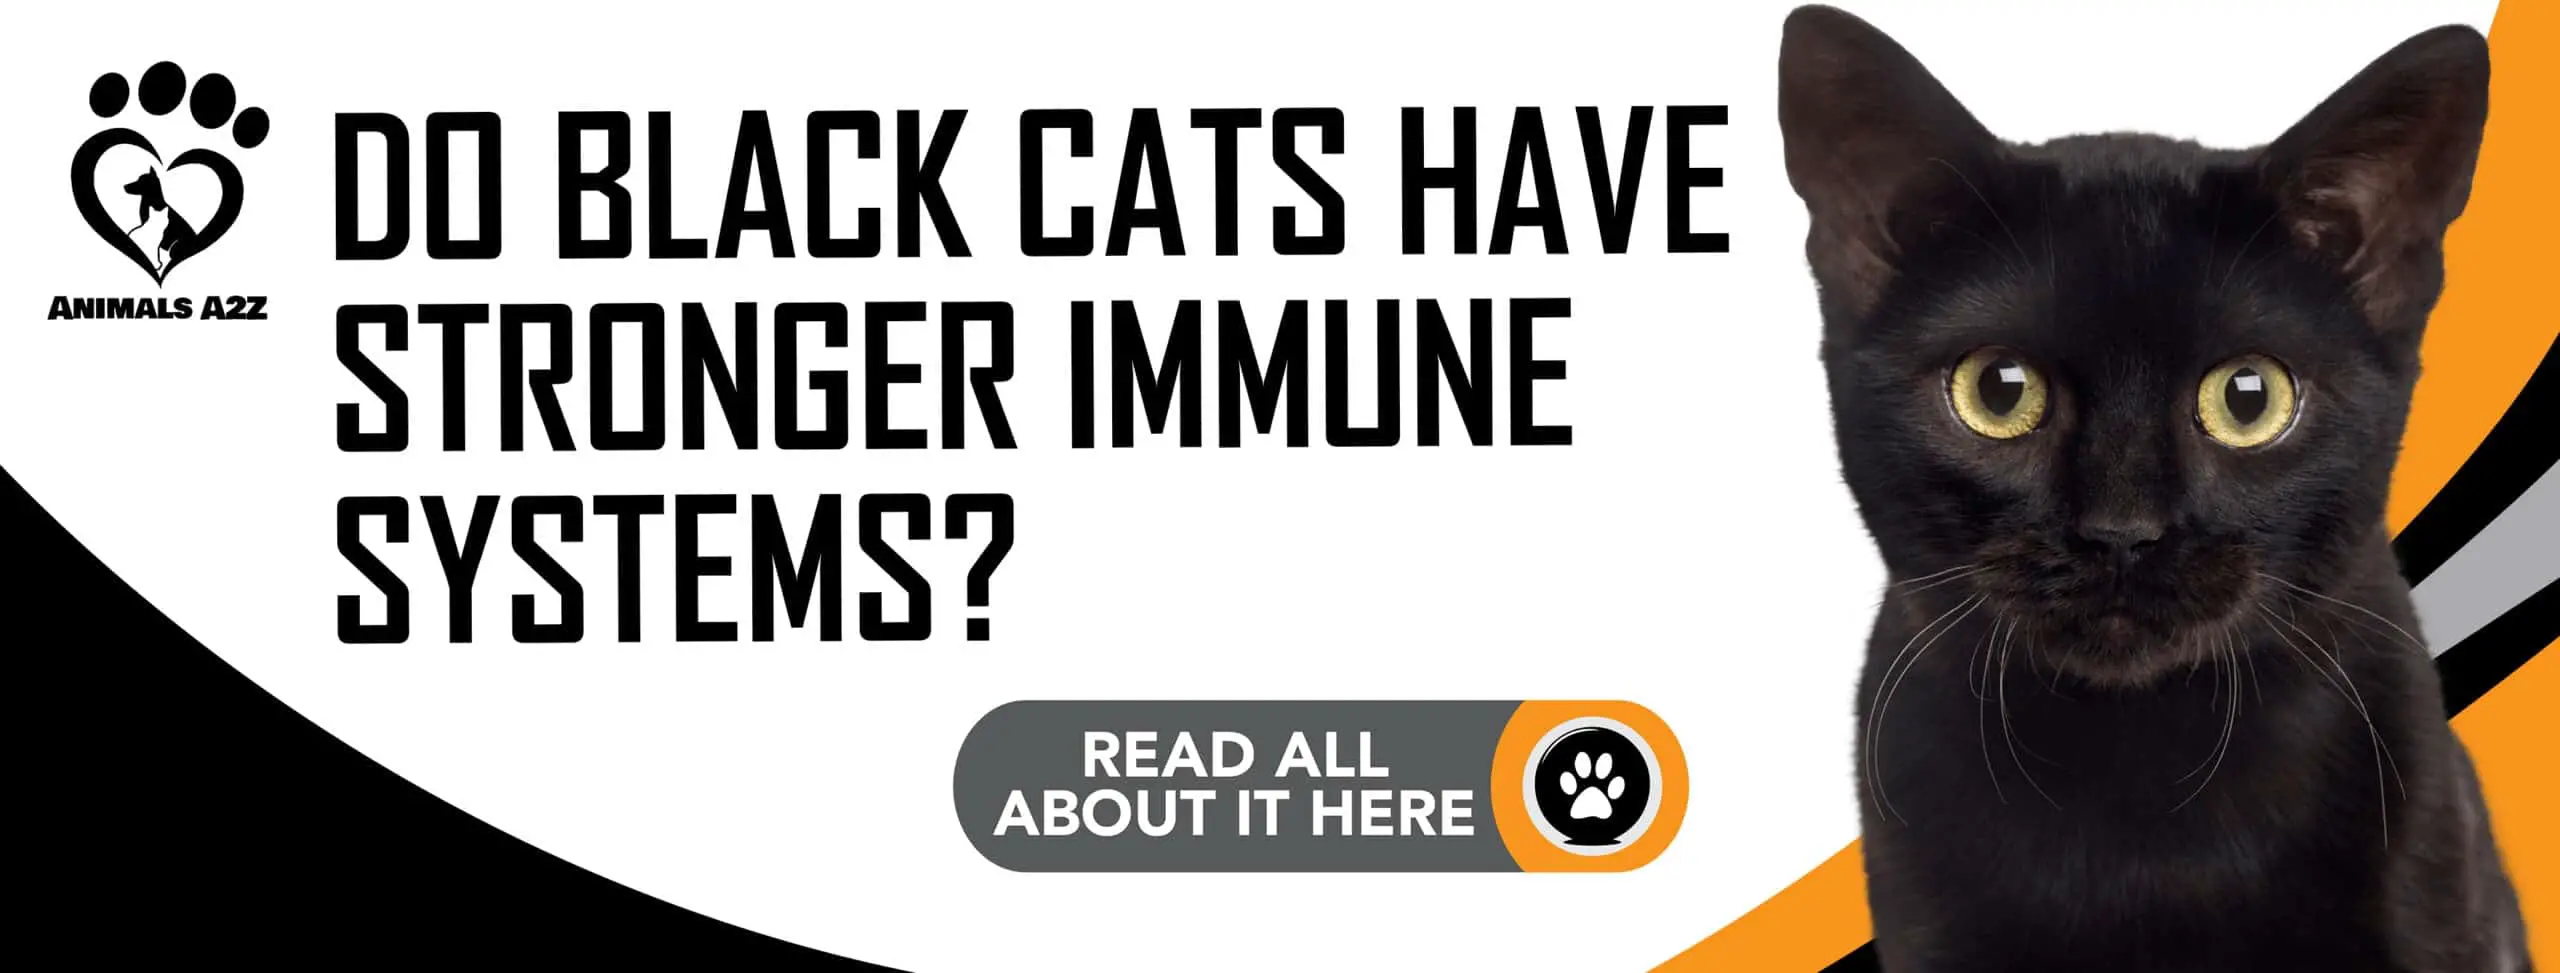 Les chats noirs ont-ils un système immunitaire plus fort ?